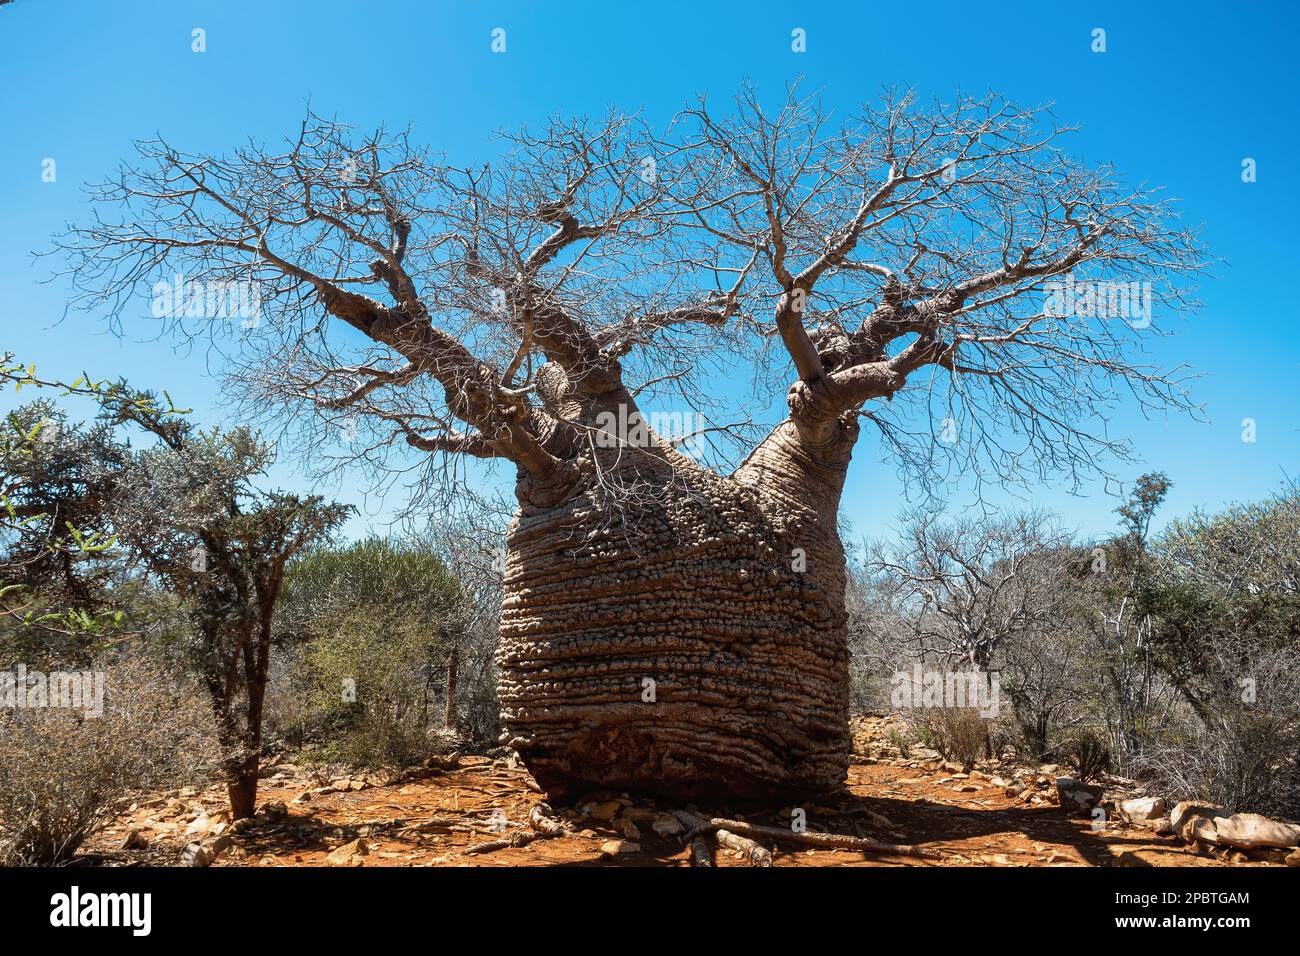 Grand-mère majestueuse Fony baobab, (Adansonia rubrostipa), la partie la plus ancienne de l'arbre, environ 1 600 ans. Parc national de Tsimanampetsotsa. Madaga Banque D'Images